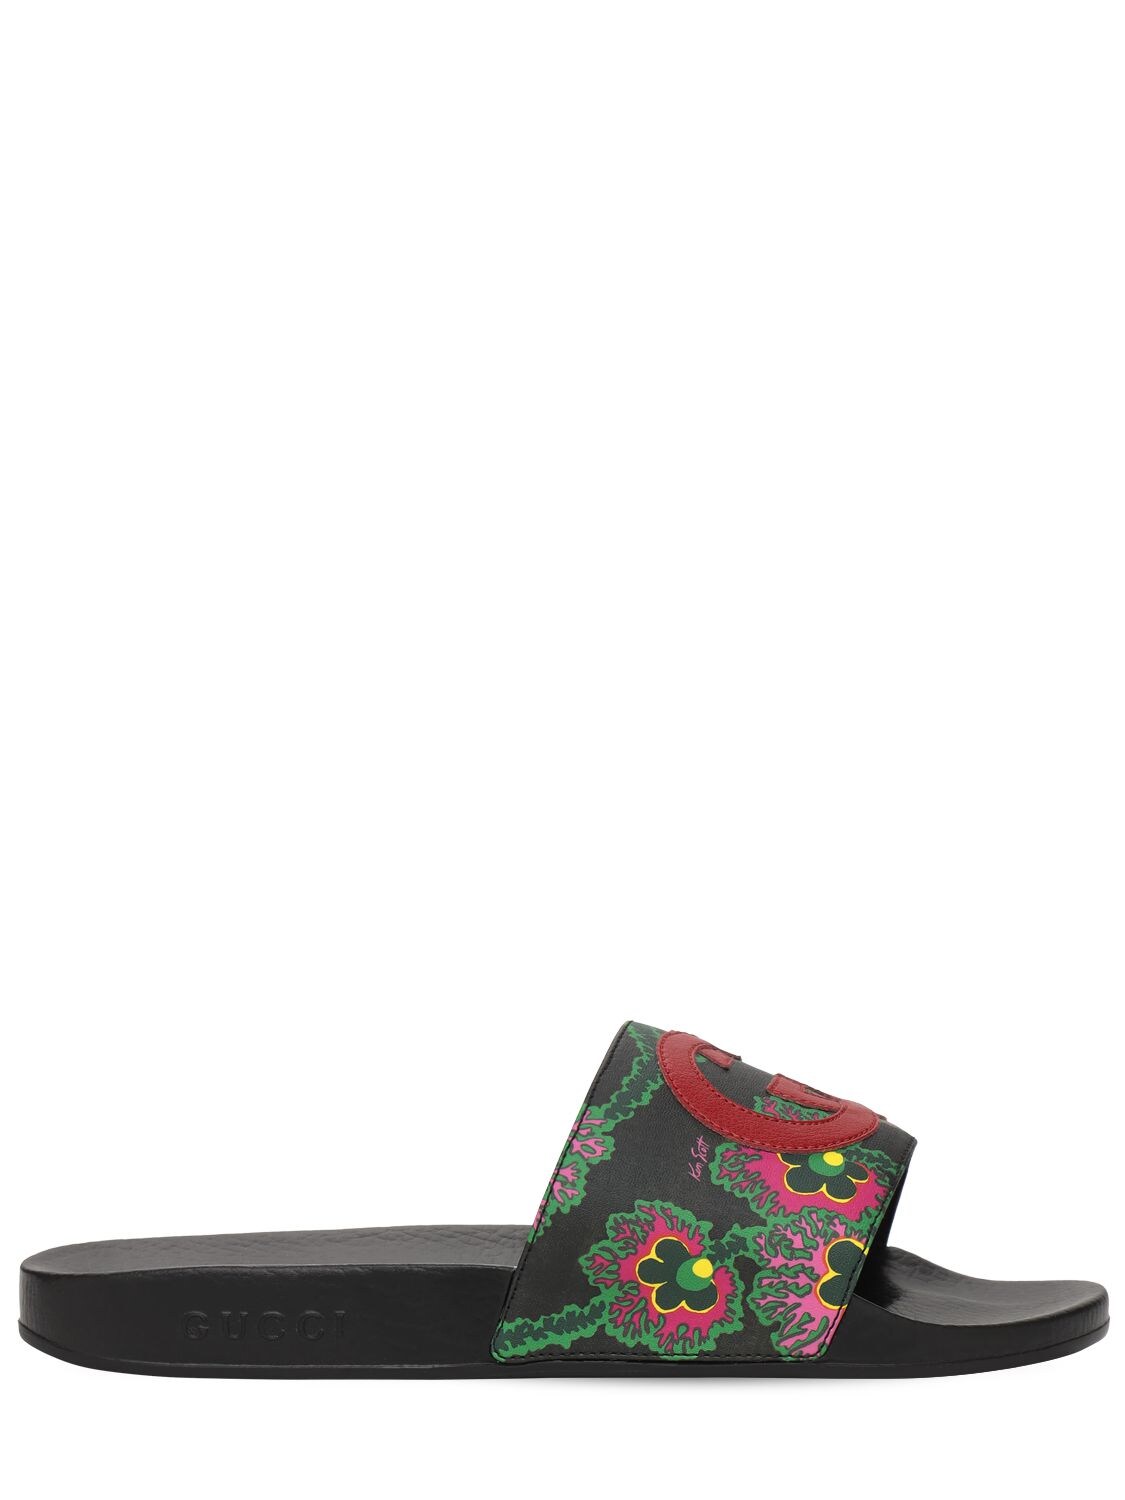 Gucci Ken Scott X  Gg Slide Sandals In Black